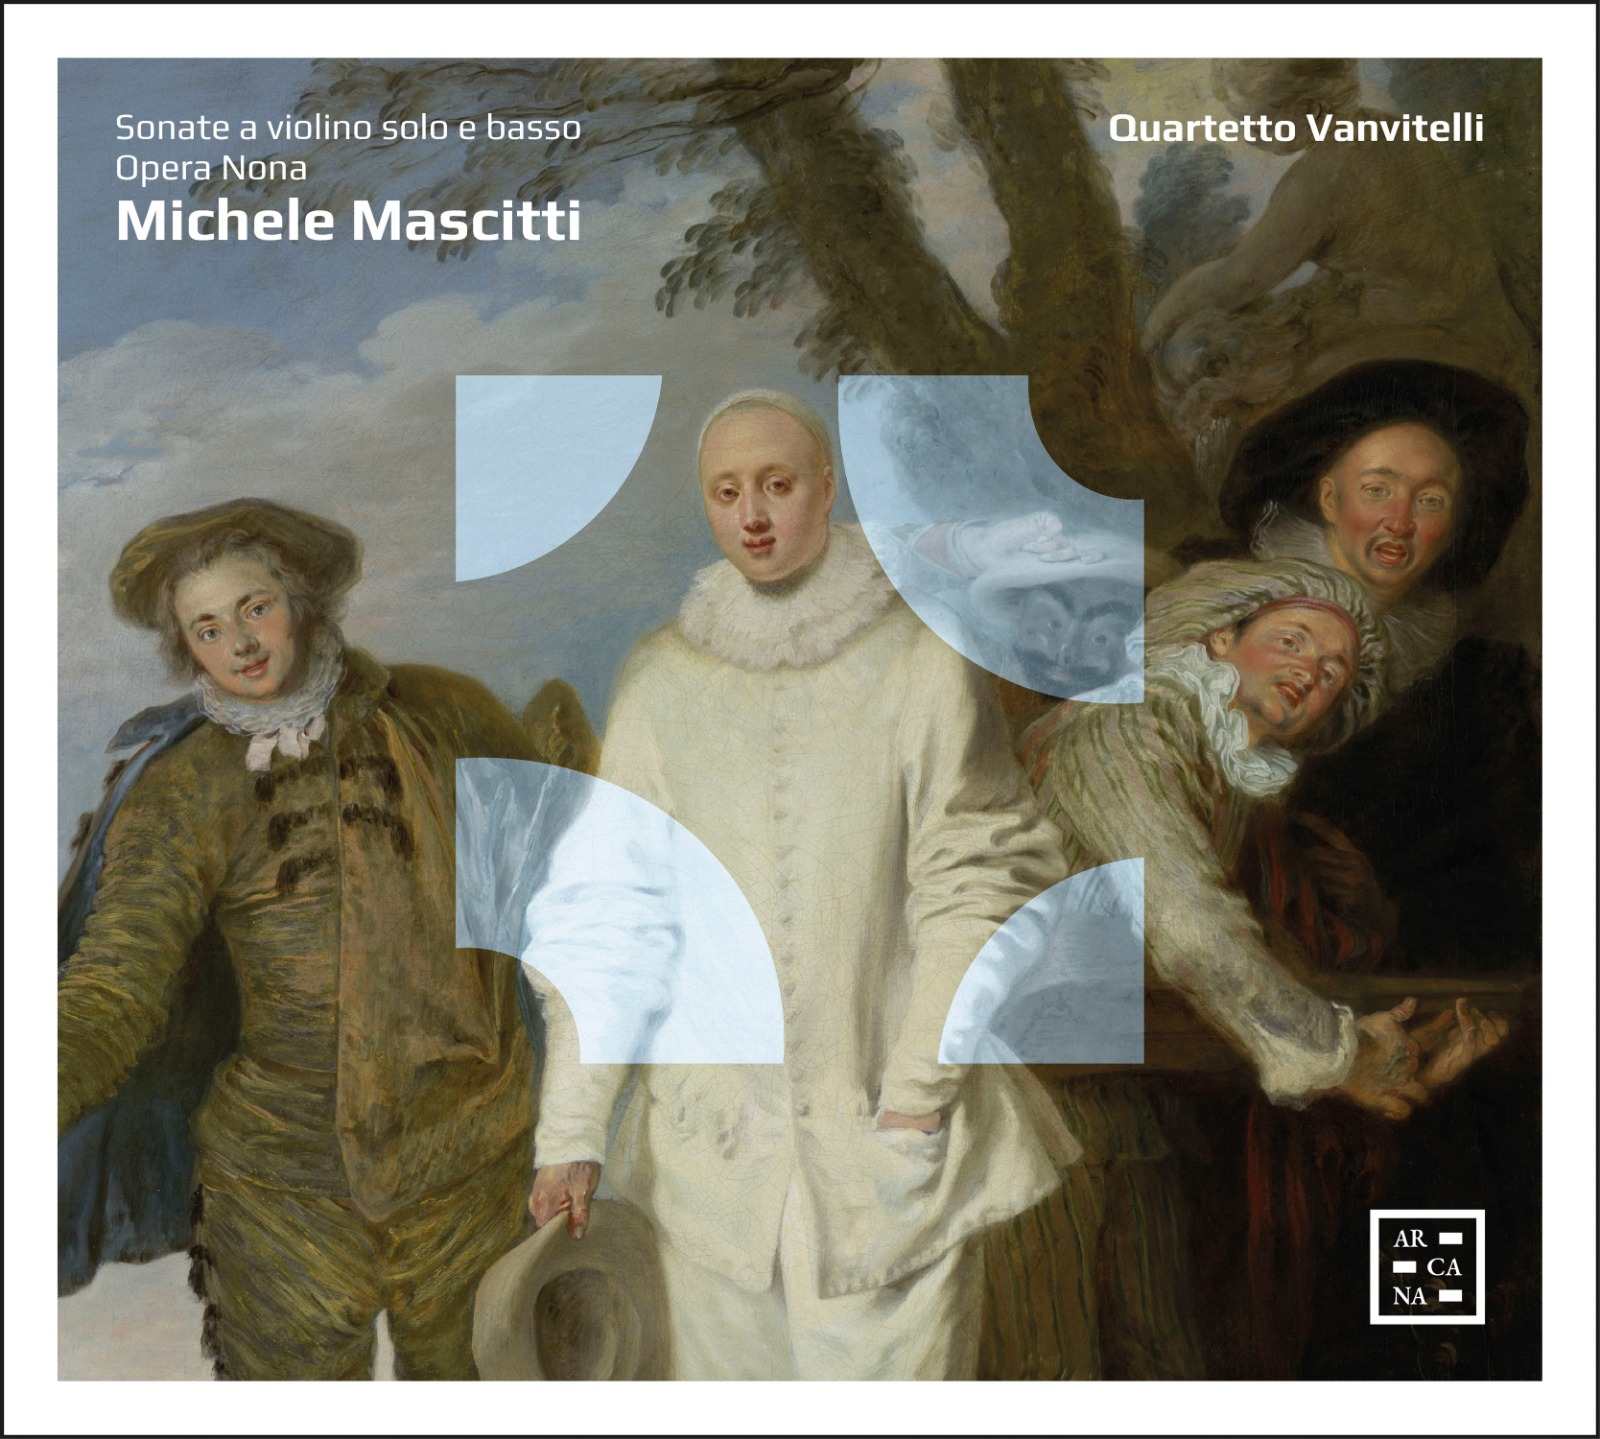 Quartetto Vanvitelli – Michele Mascitti, Sonate a violino solo e basso / Opera Nona